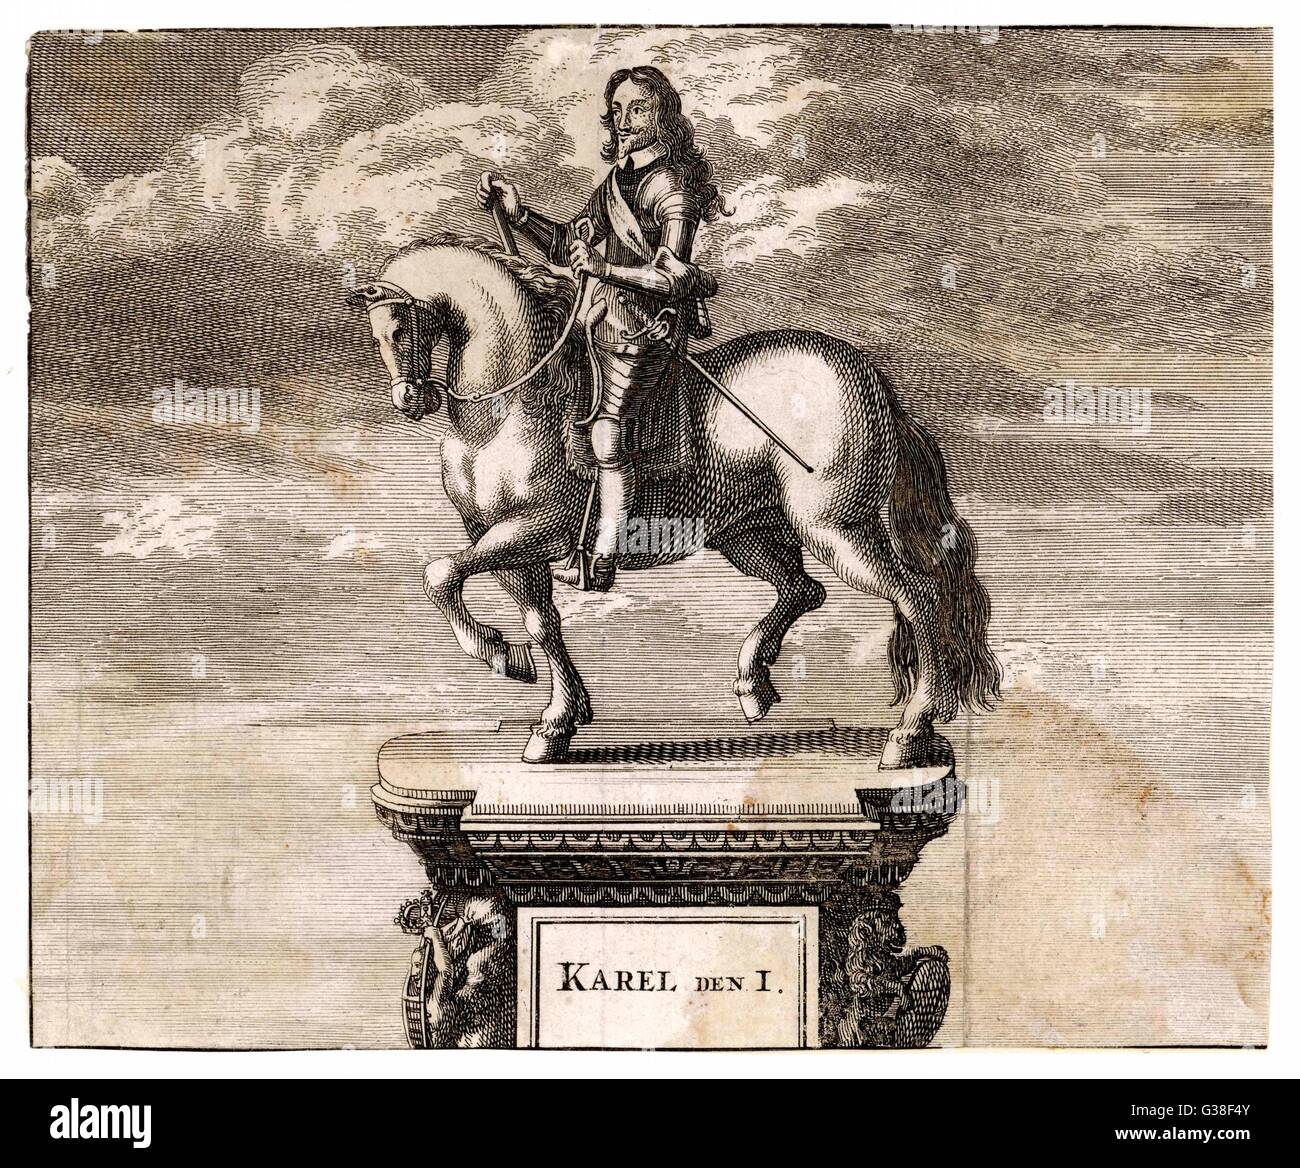 Carlos I de Inglaterra, la estatua de Carlos sobre su caballo, en Charing Cross, Londres ' mostrar parte del frontón decorativo con la inscripción: "Karel Den I' Fecha: 1600 - 1649 Foto de stock